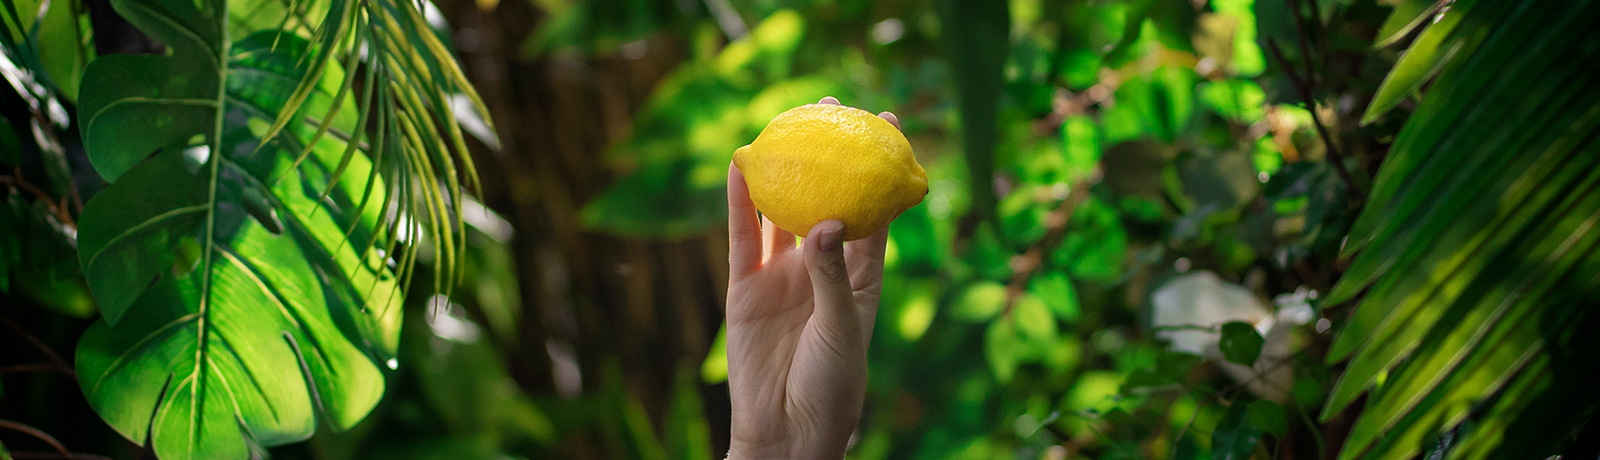 ¡El verano sabe a limón!